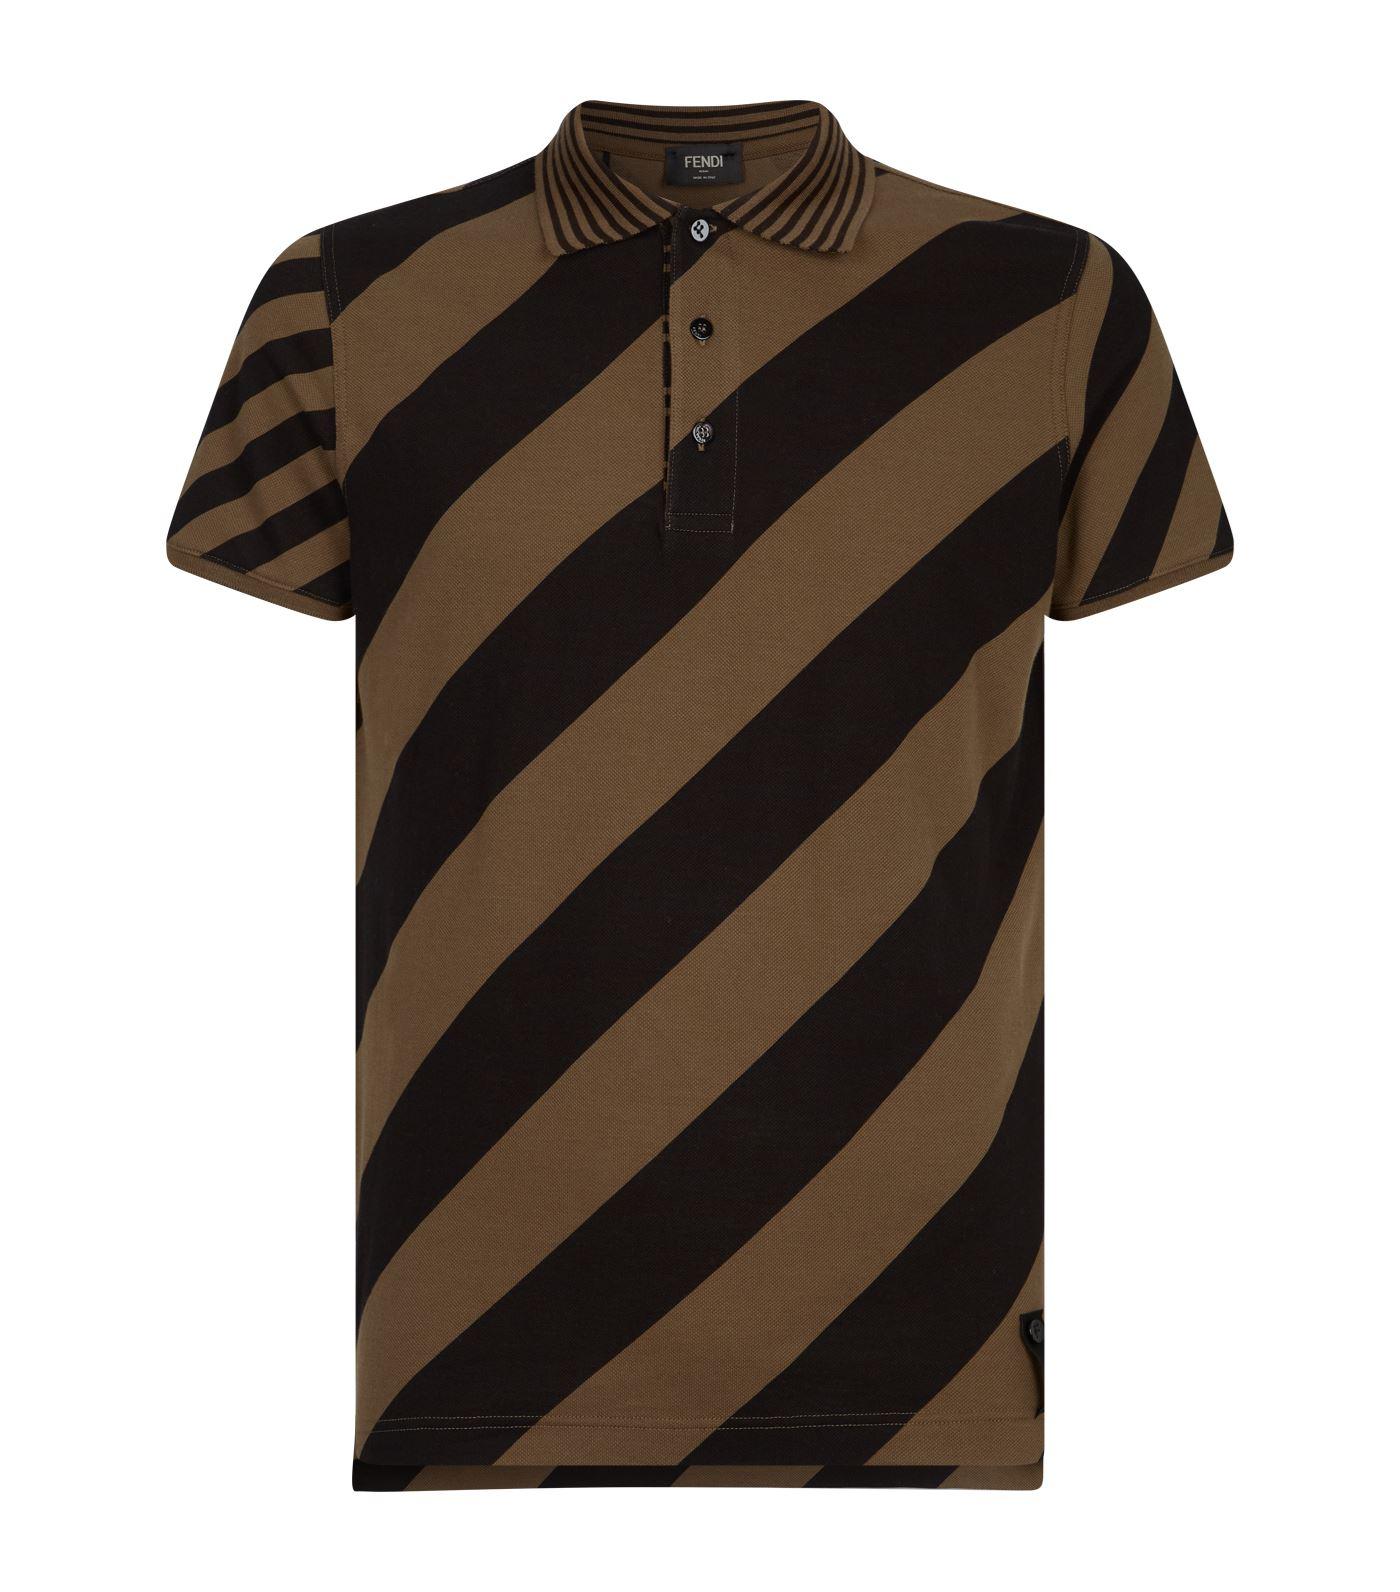 Fendi Cotton Diagonal Stripe Polo Shirt in Brown for Men - Lyst